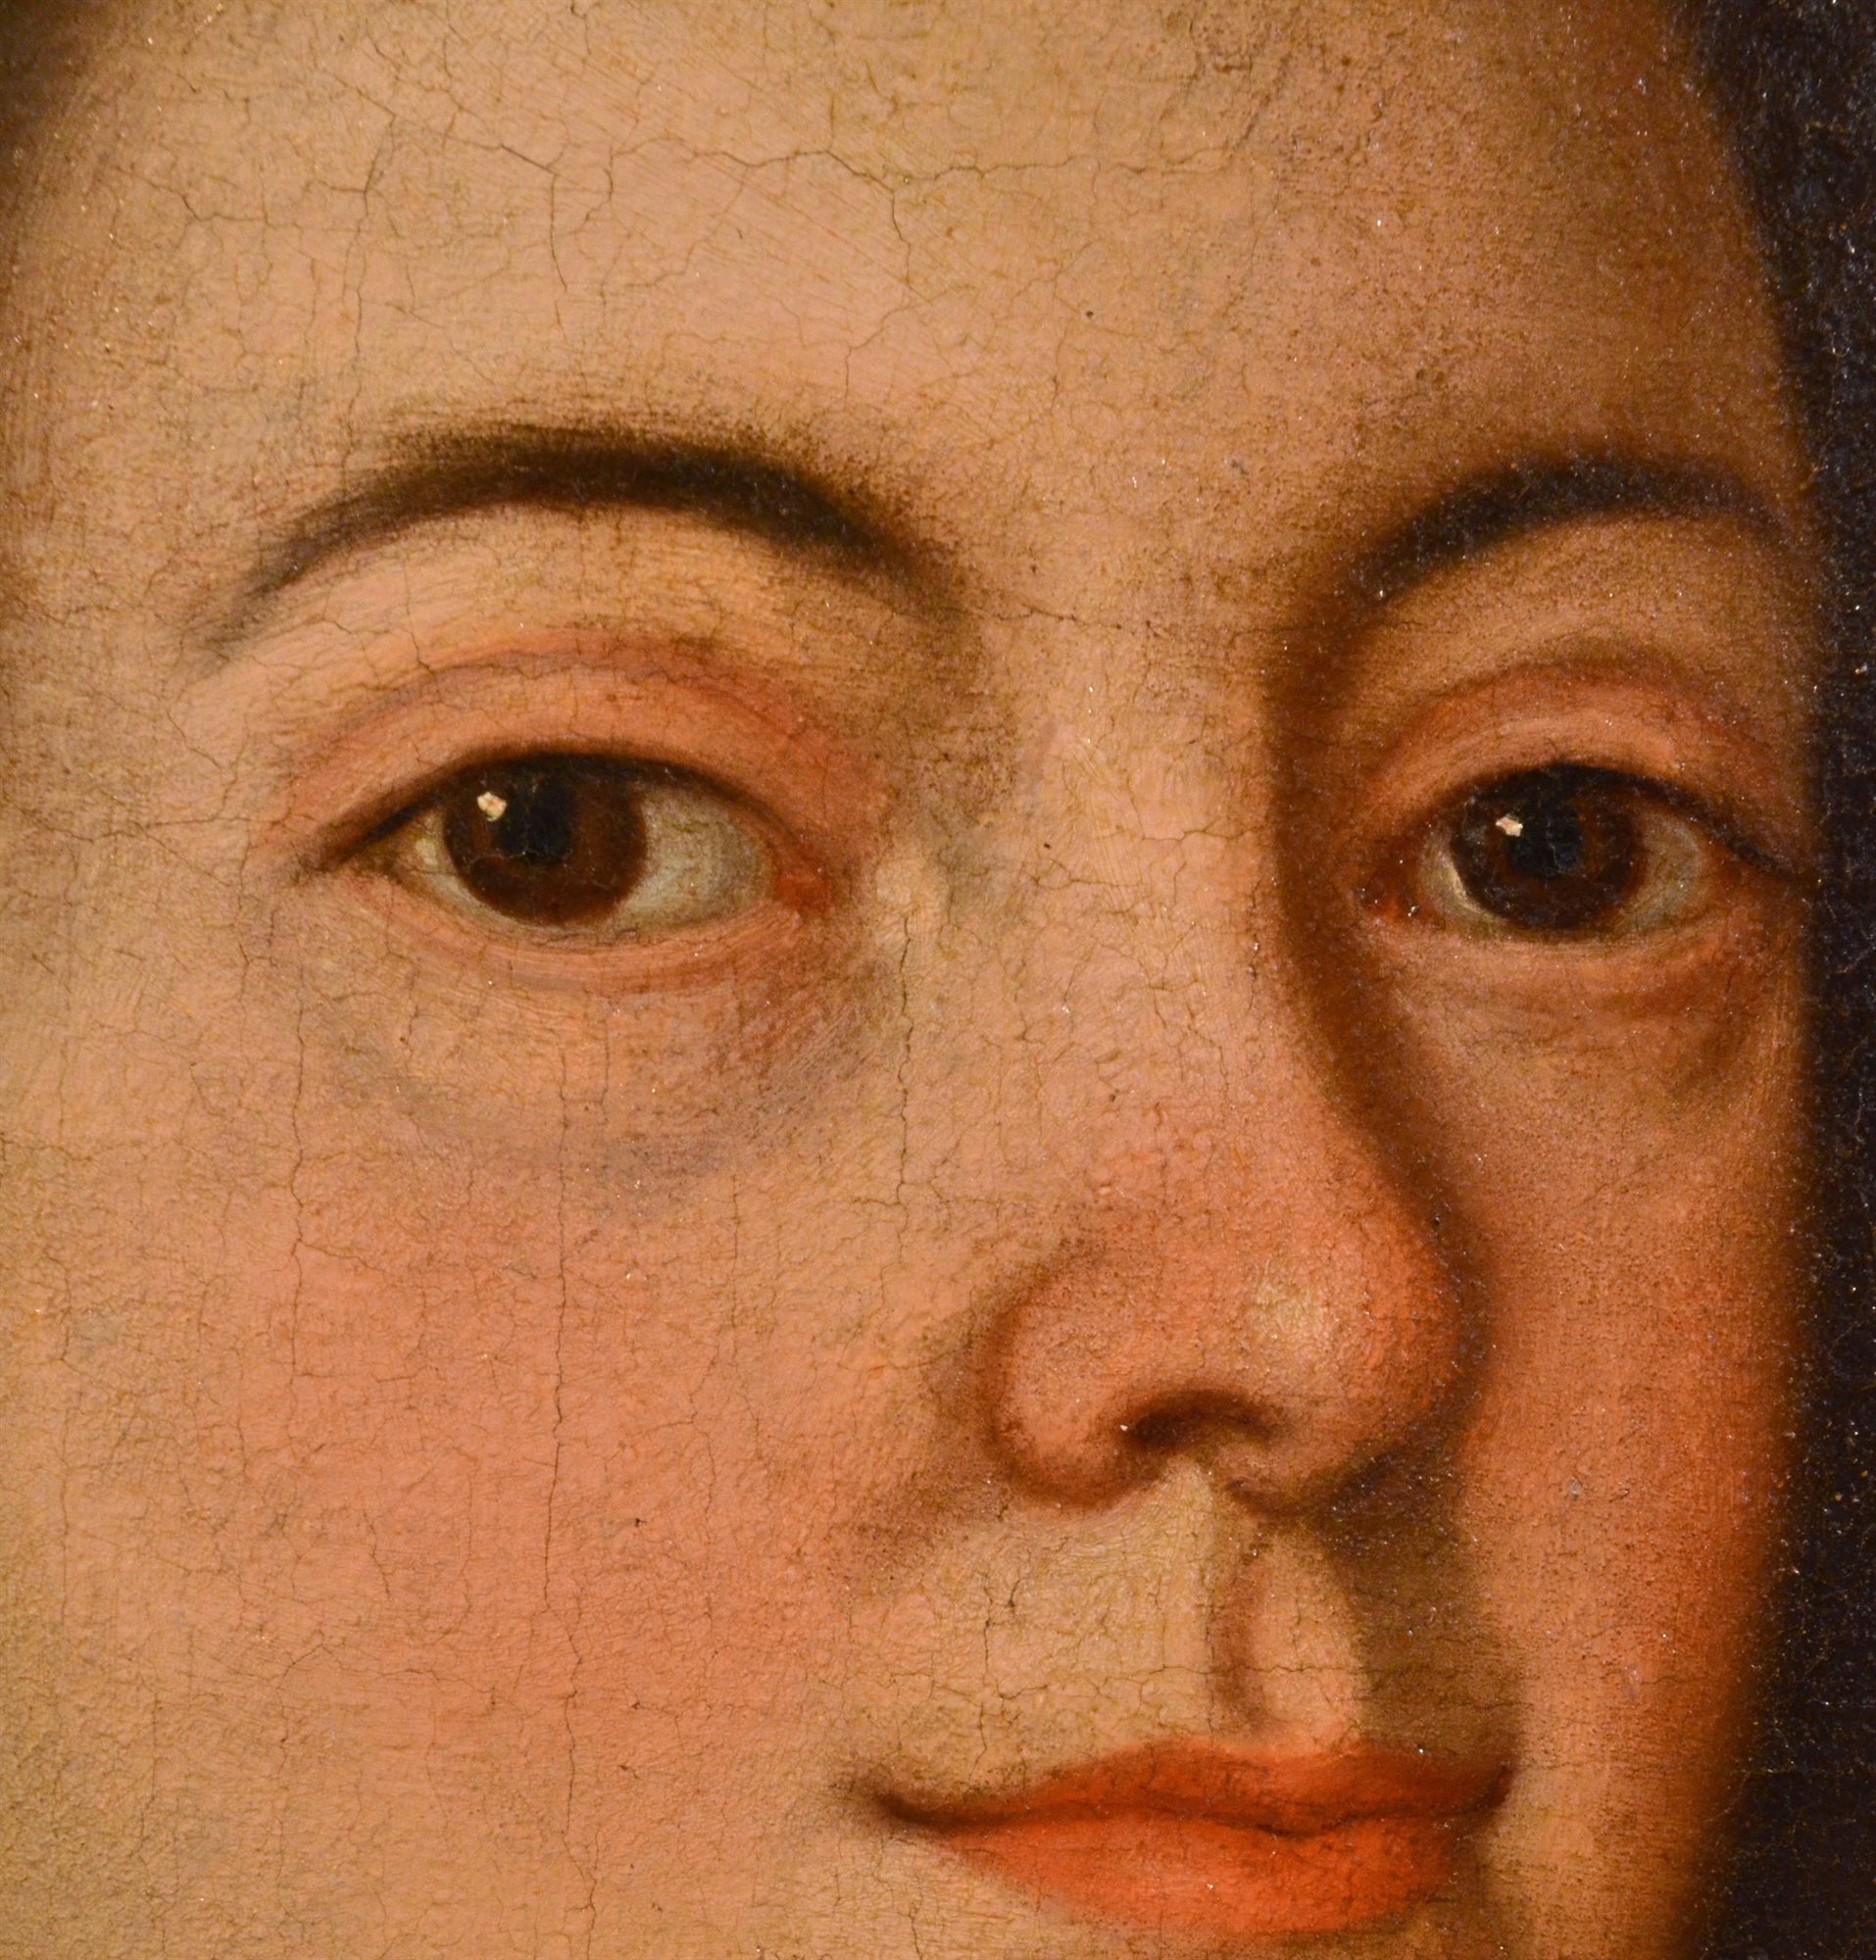 Coppia di ritratti 'Johann Wolfgang von Goethe e la moglie Christiane'